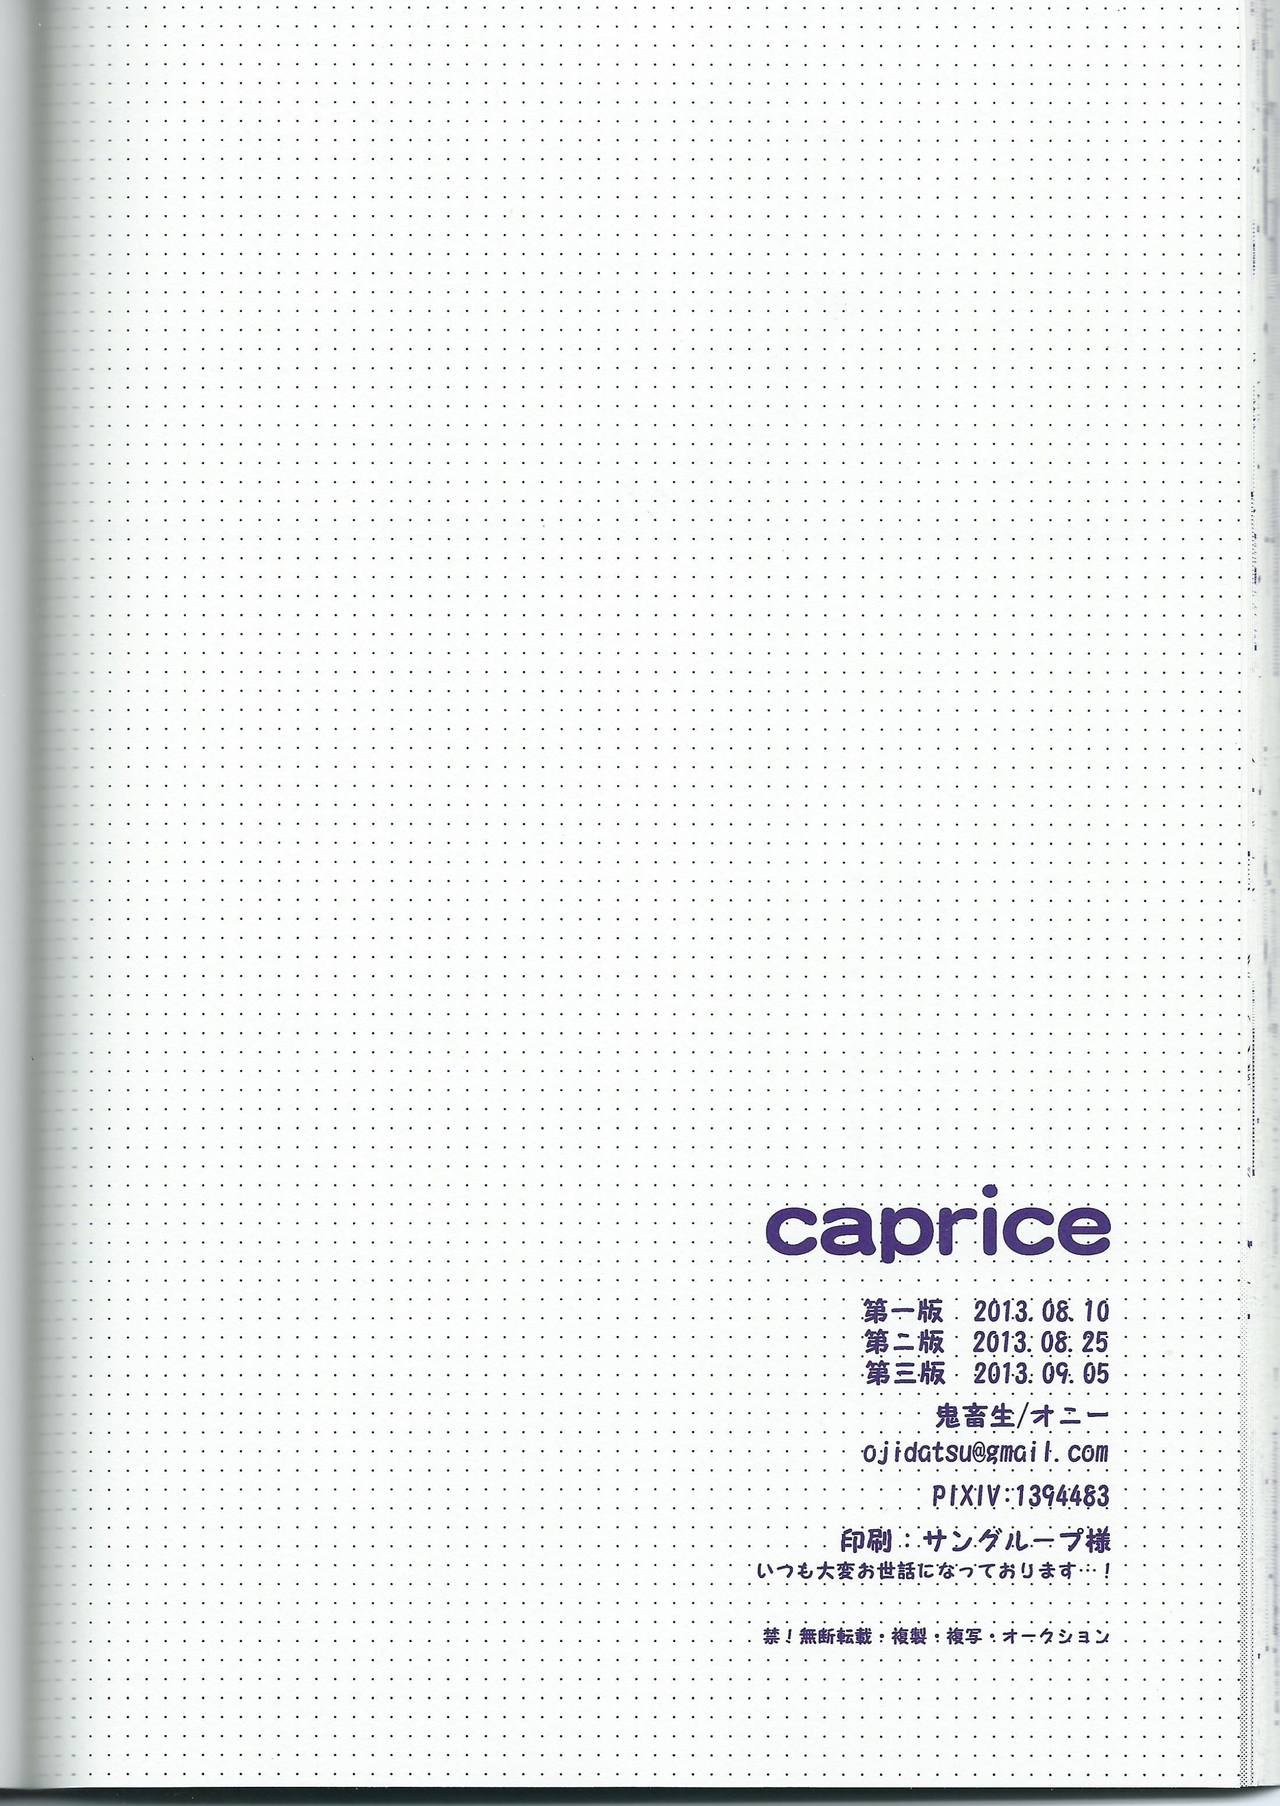 [Onichikusyou (Oni)] caprice (Free!) [鬼畜生 (オニー)] caprice (Free!)